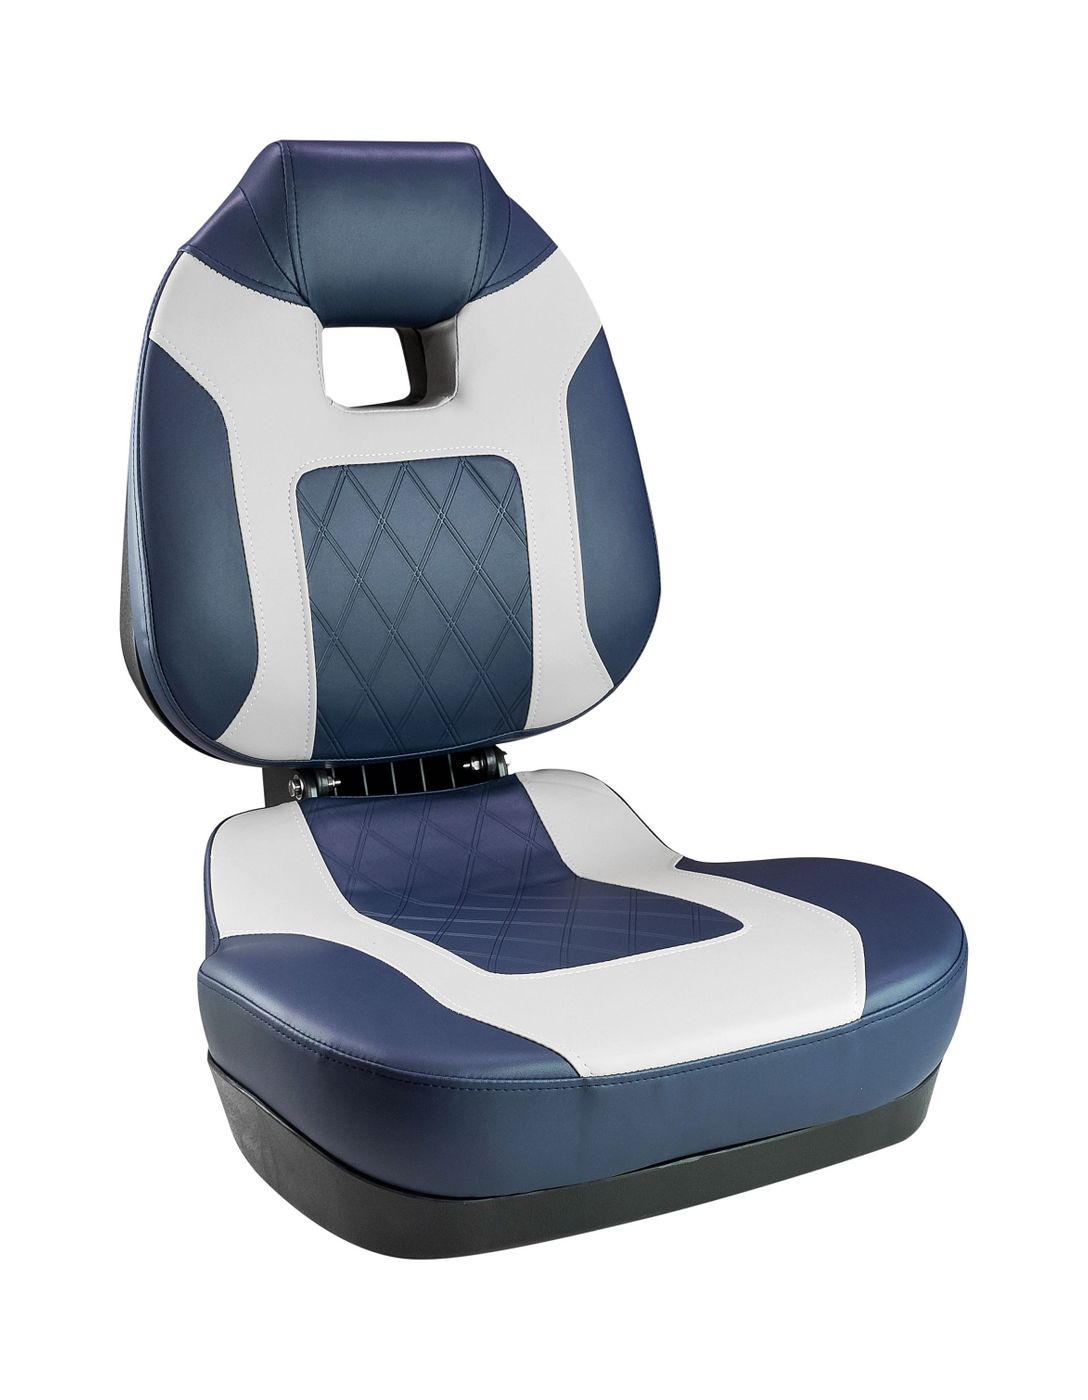 Кресло складное мягкое FISH PRO II с высокой спинкой, цвет синий/серый 1041419 кресло складное мягкое skipper серый синий 1061019